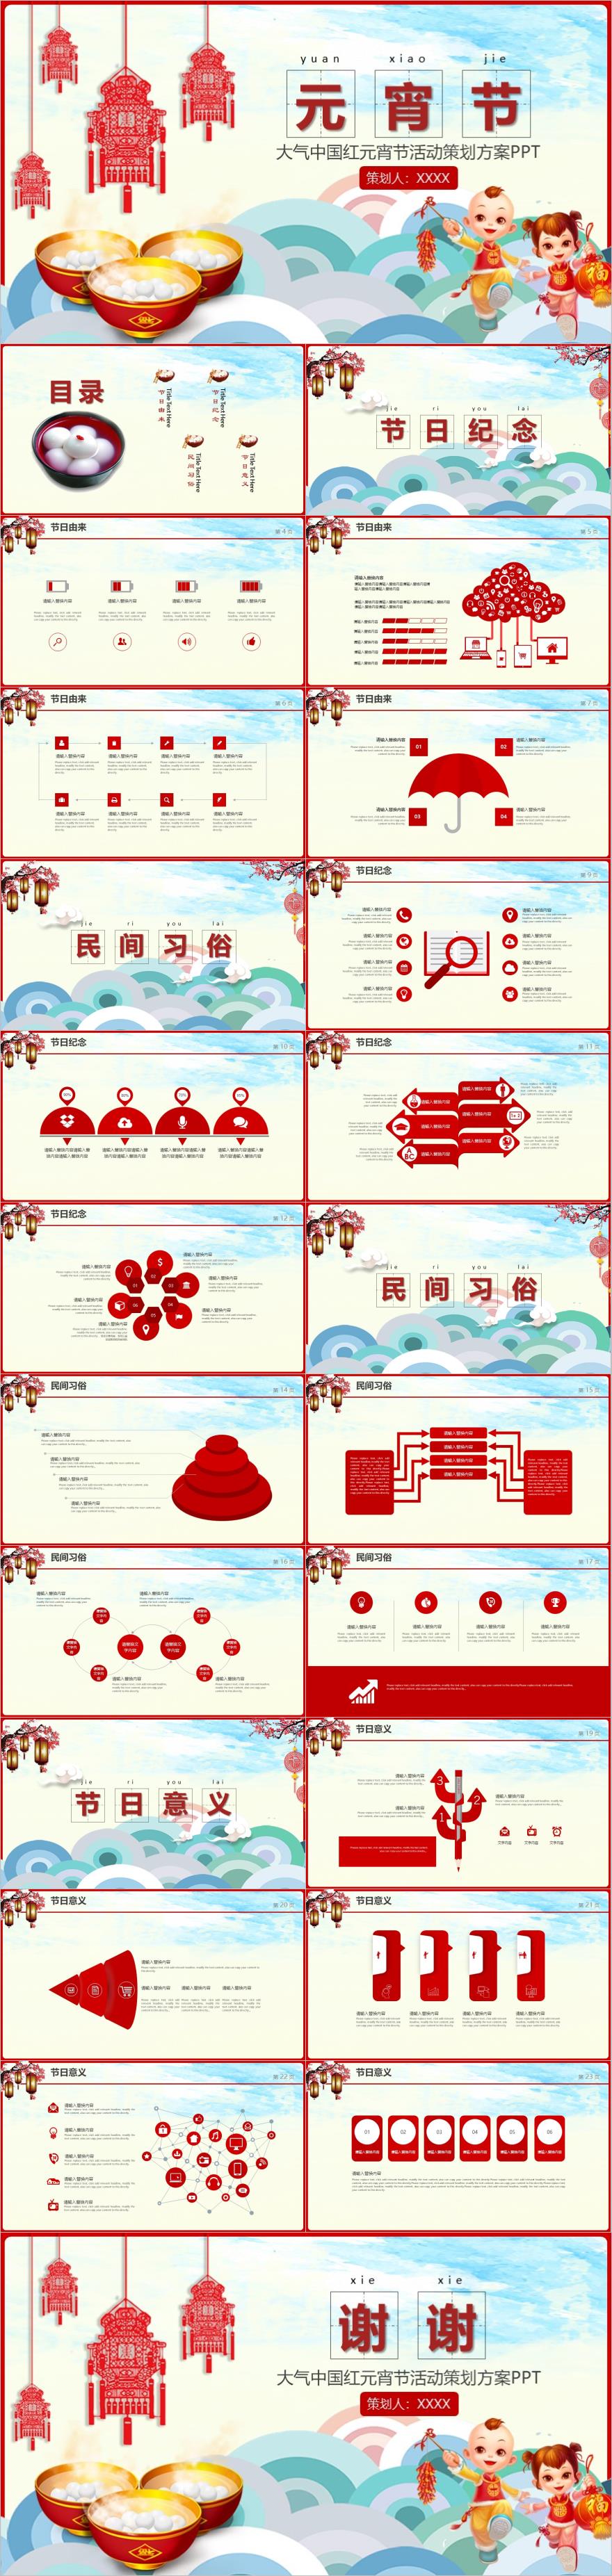 中国红元宵节汤圆策划方案PPT模板